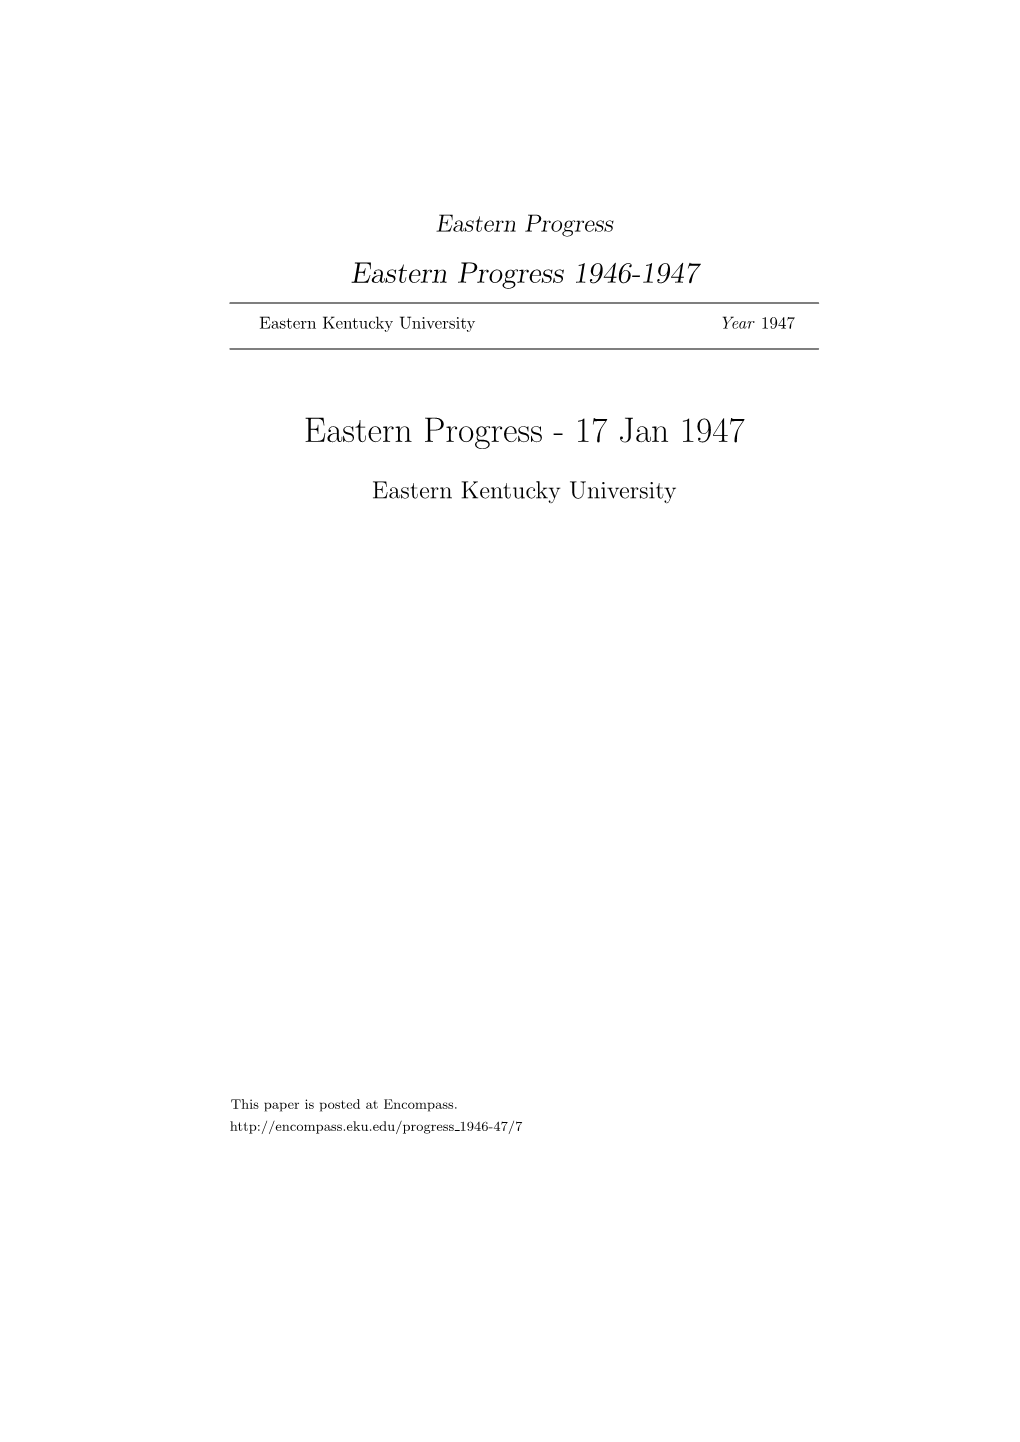 Eastern Progress Eastern Progress 1946-1947